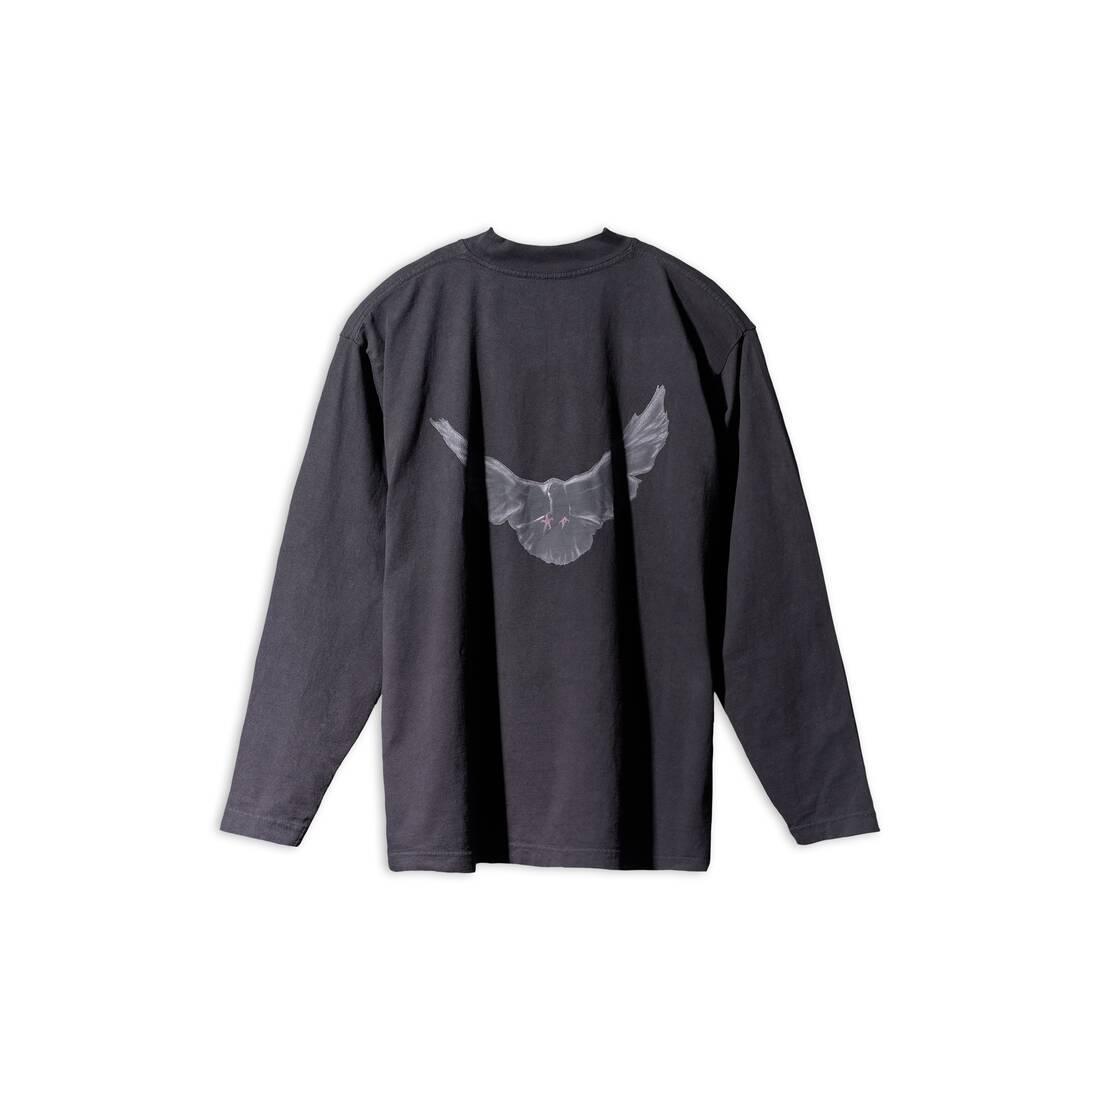 Balenciaga Yeezy Gap Engineered By Dove Long Sleeve Tee in Black